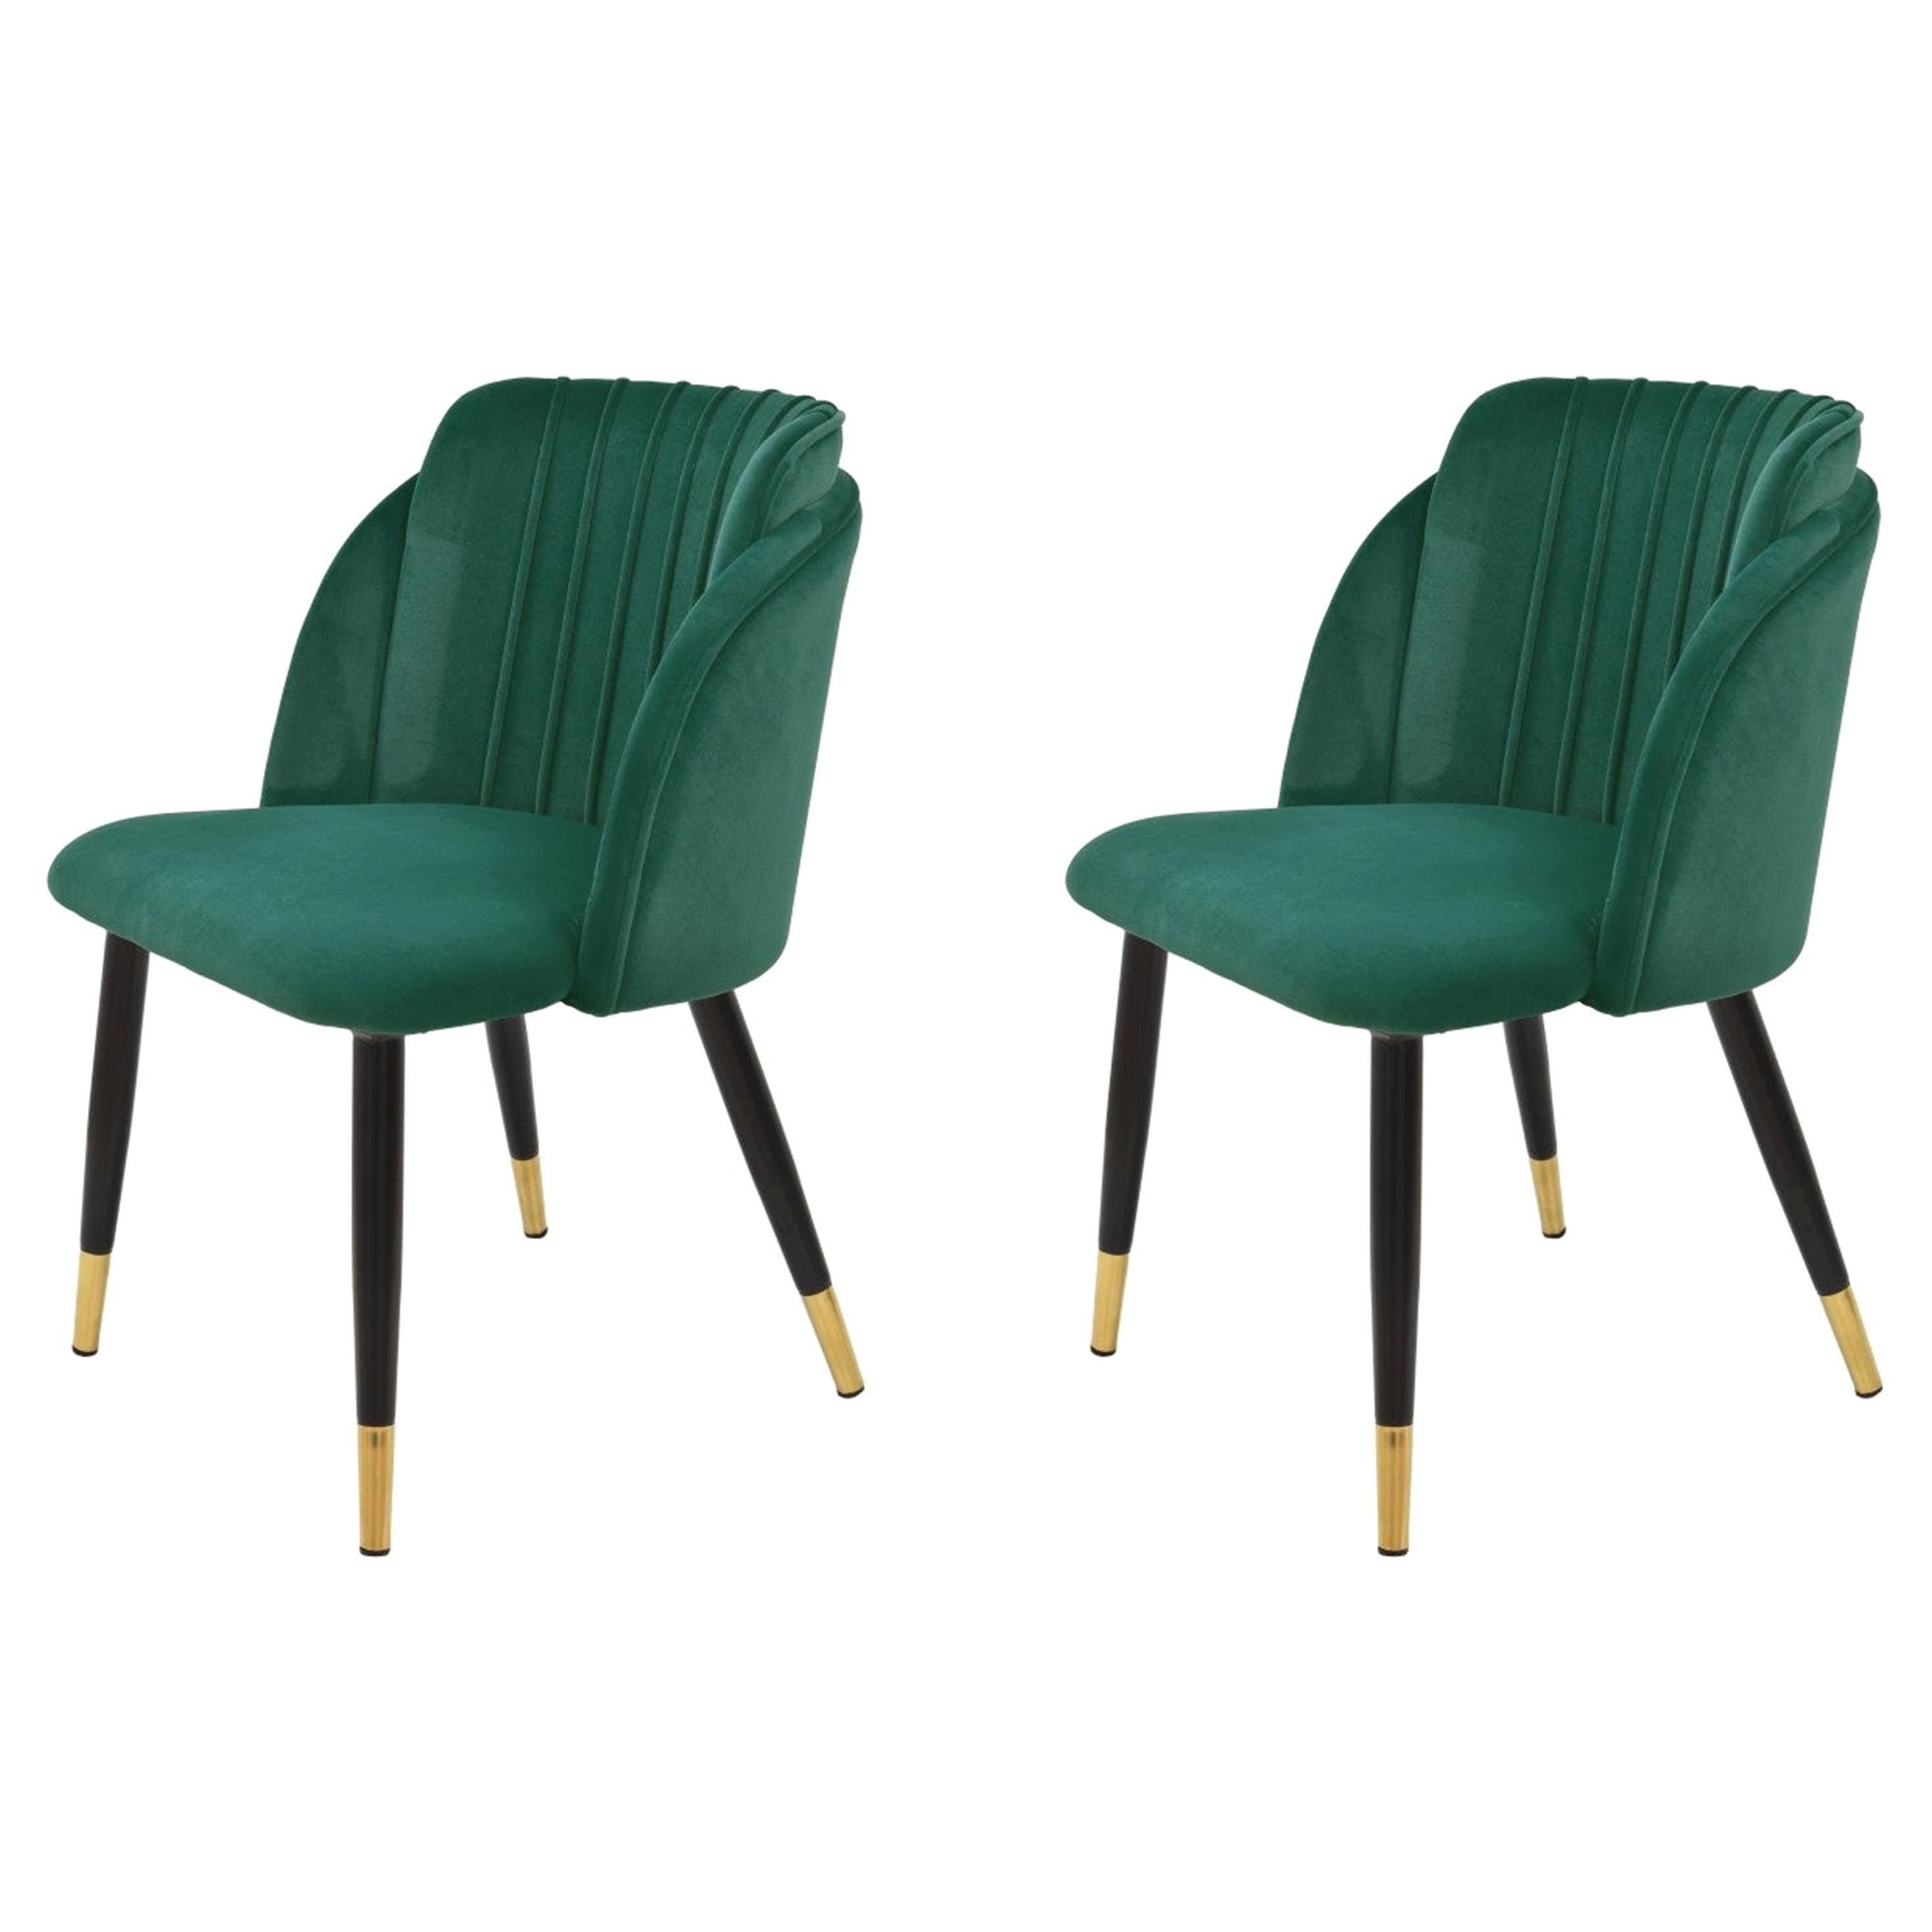 Pair New Spanish Chair, Metal, Green Velvet Upholstery